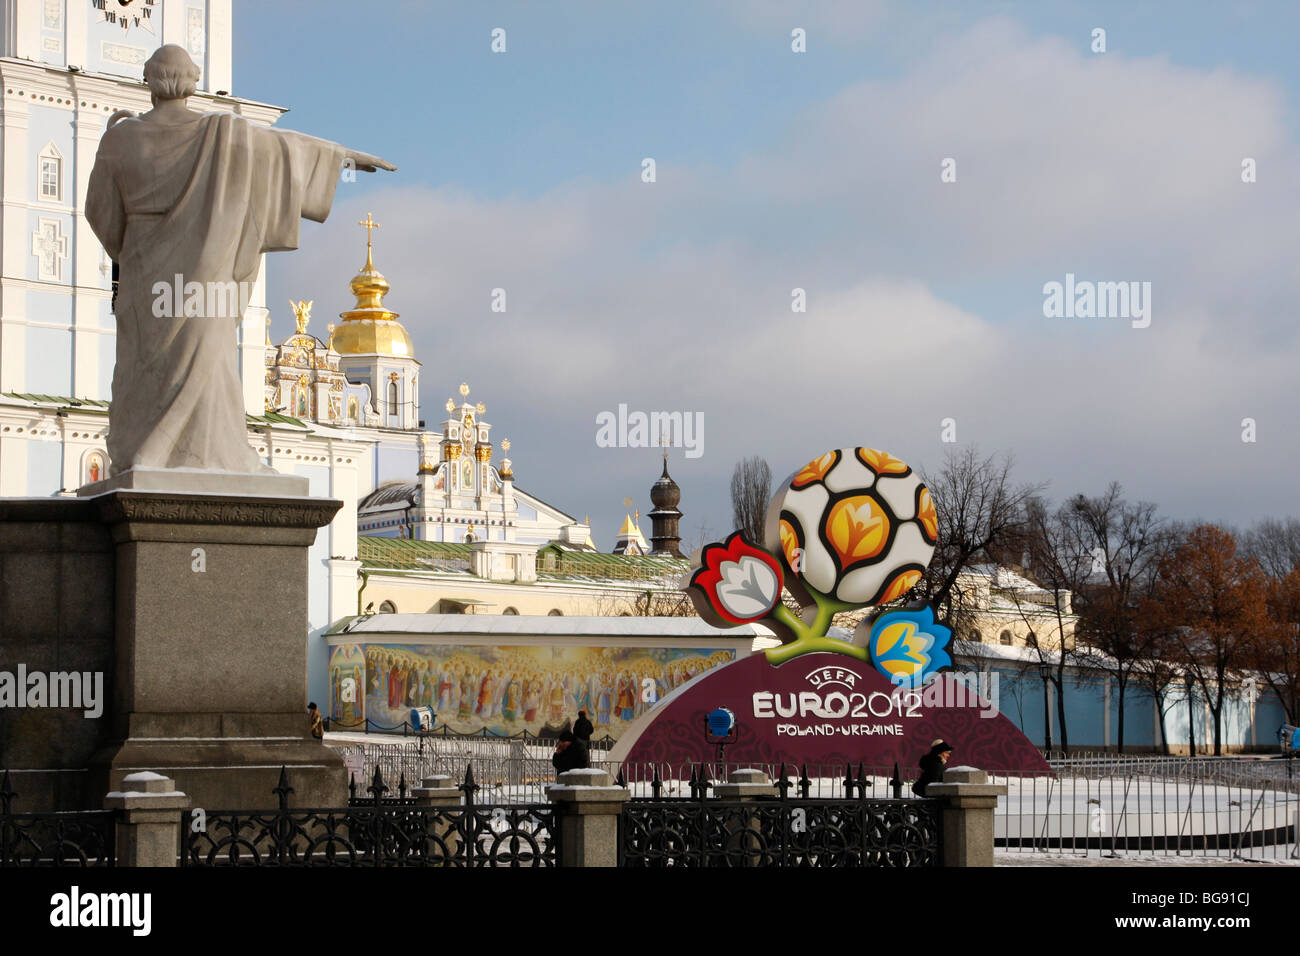 Championnats de football Euro 2012 affiche officiellement symbole à Kiev (Kyiv) , où les championnats ont eu lieu Banque D'Images